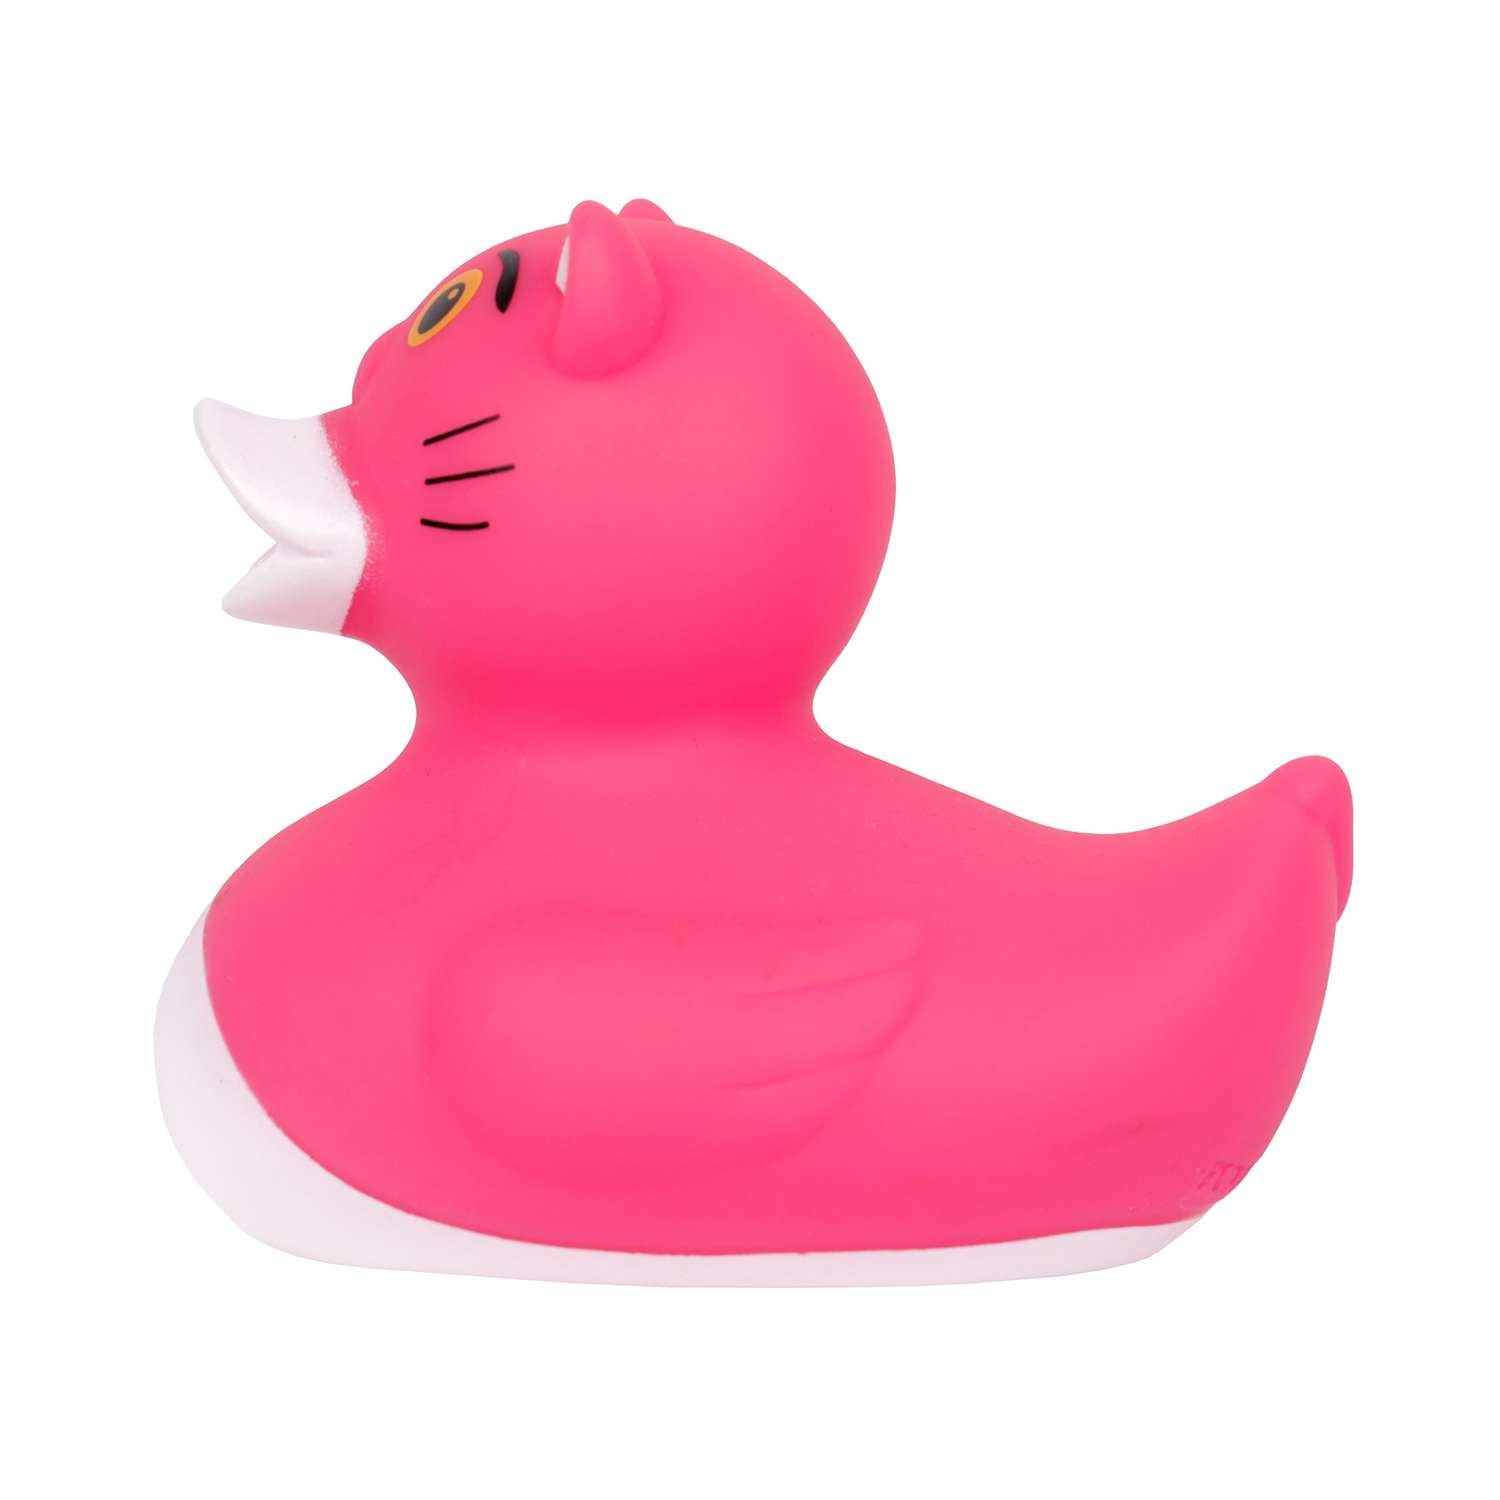 Игрушка для ванны сувенир Funny ducks Розовая пантера уточка 1314 - фото 4